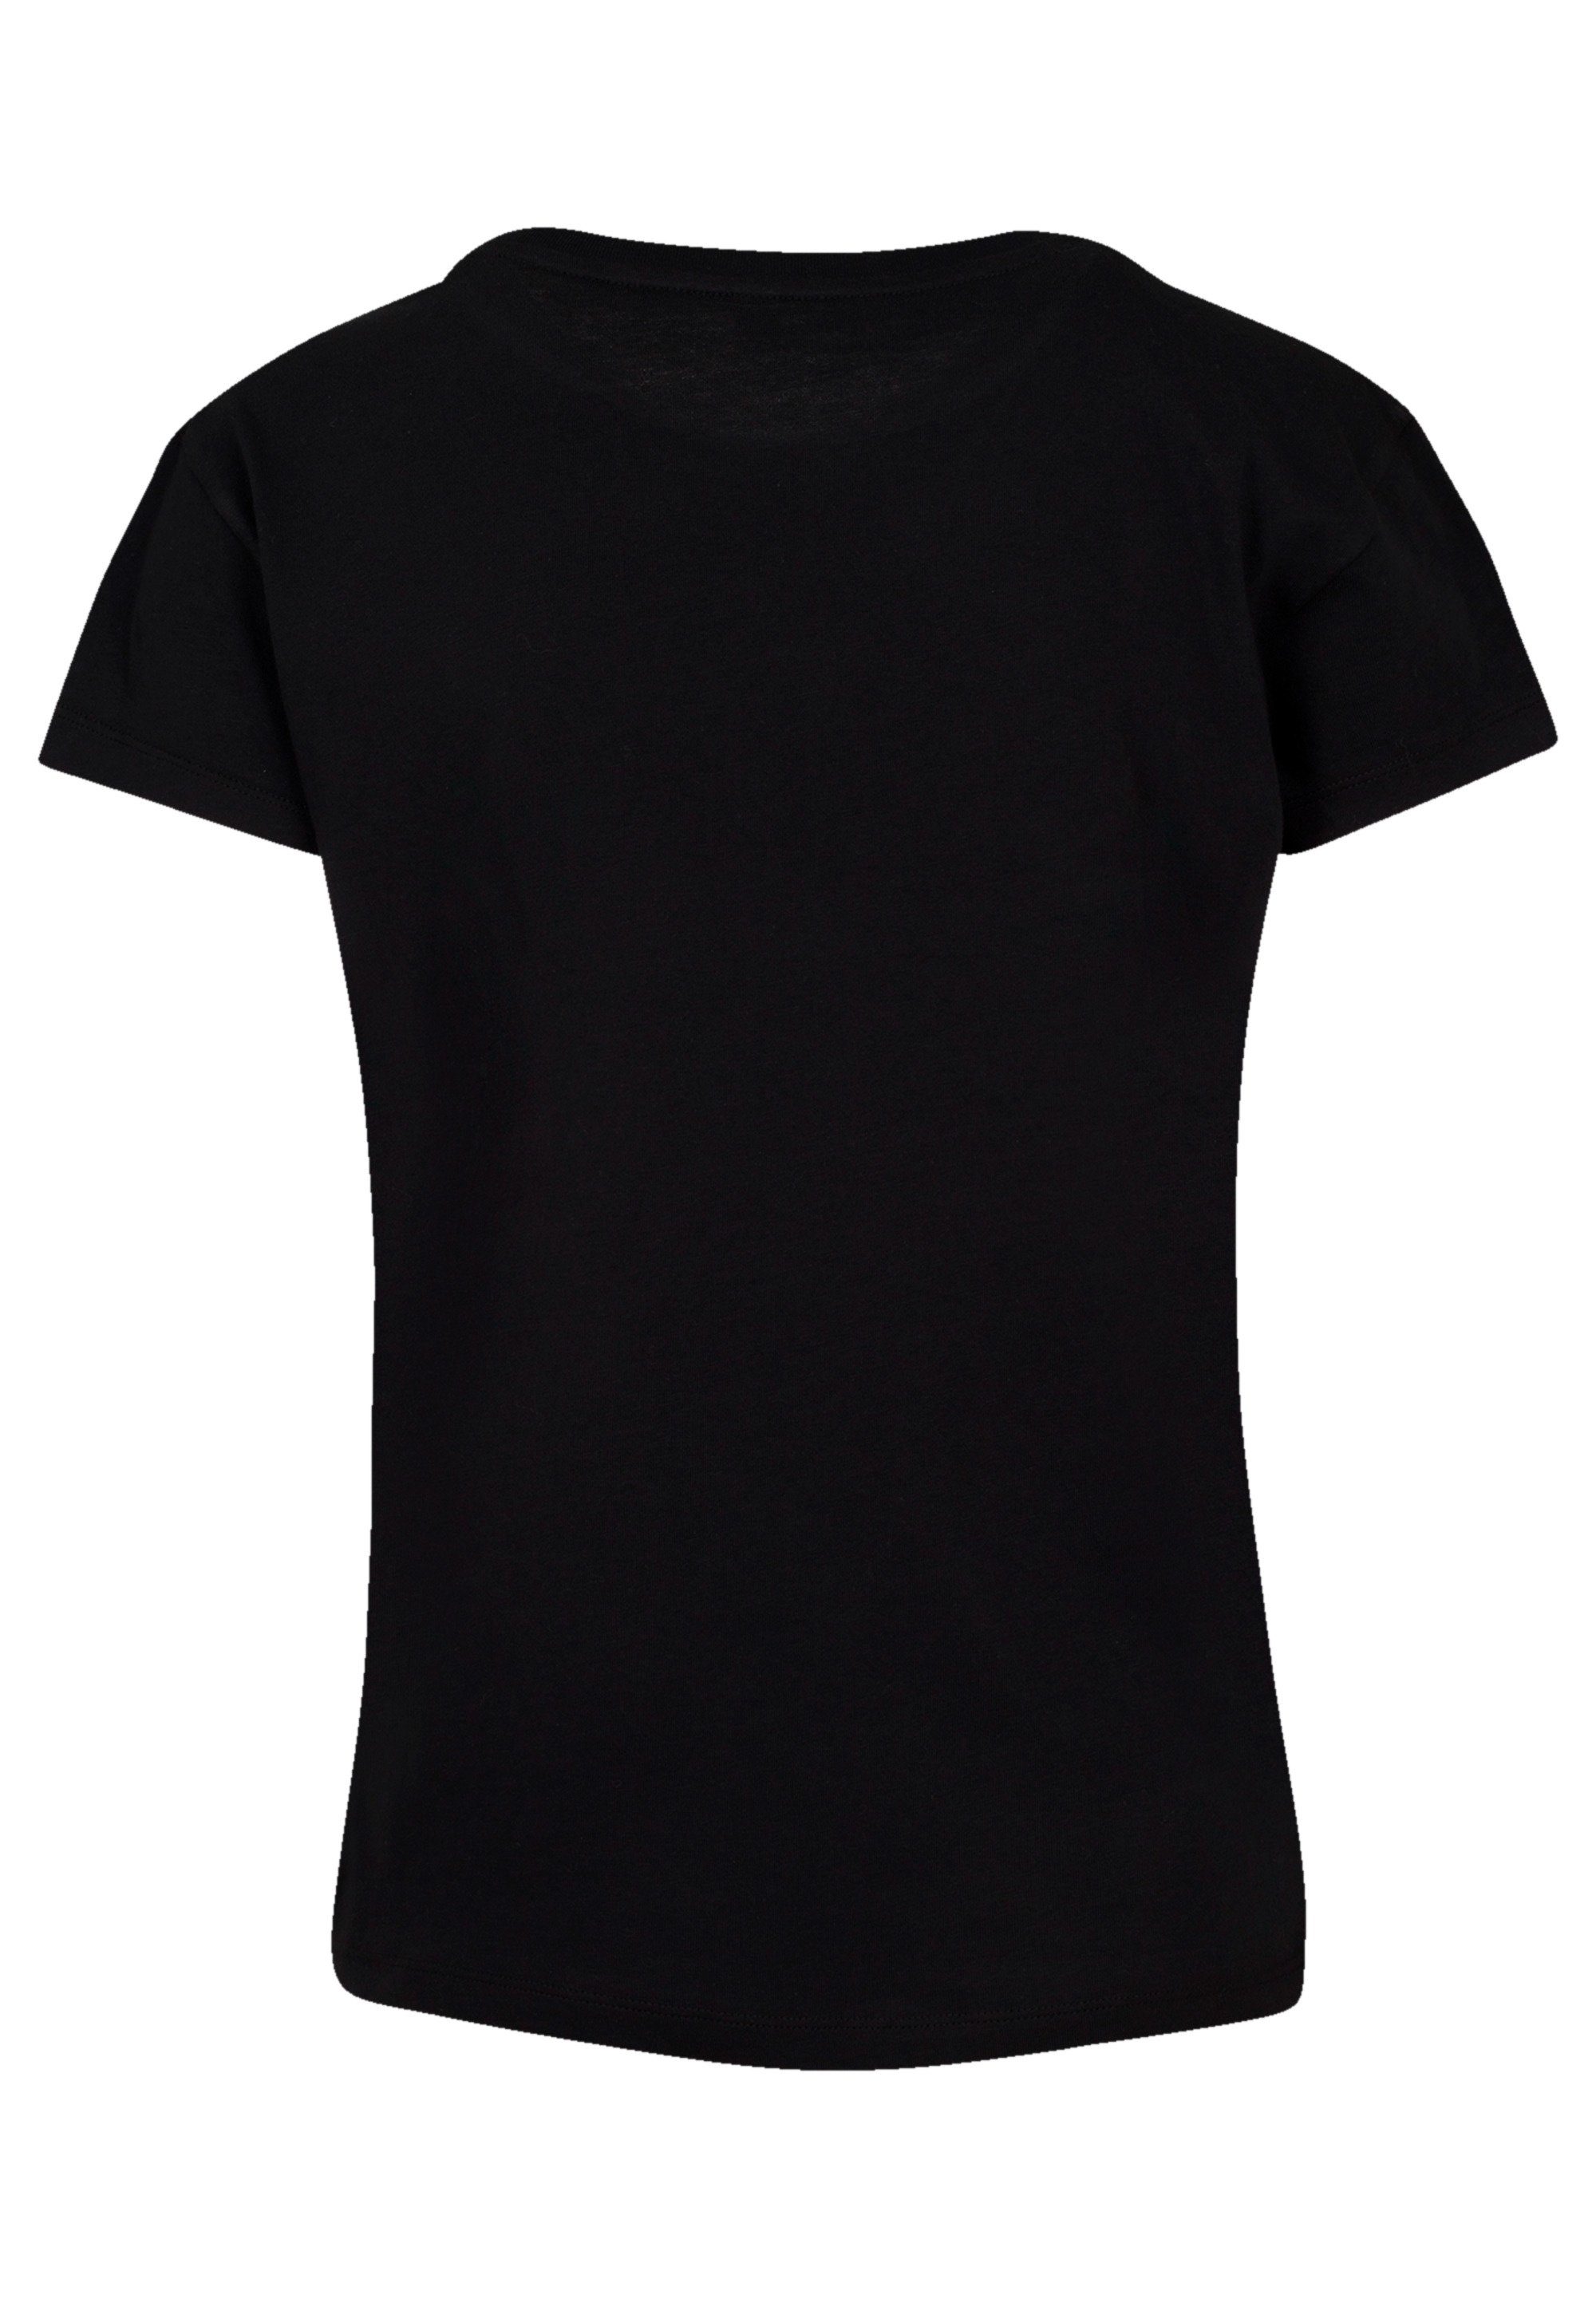 F4NT4STIC T-Shirt Disney Peter Pan Head To Neverland Premium Qualität,  Perfekte Passform und hochwertige Verarbeitung | T-Shirts